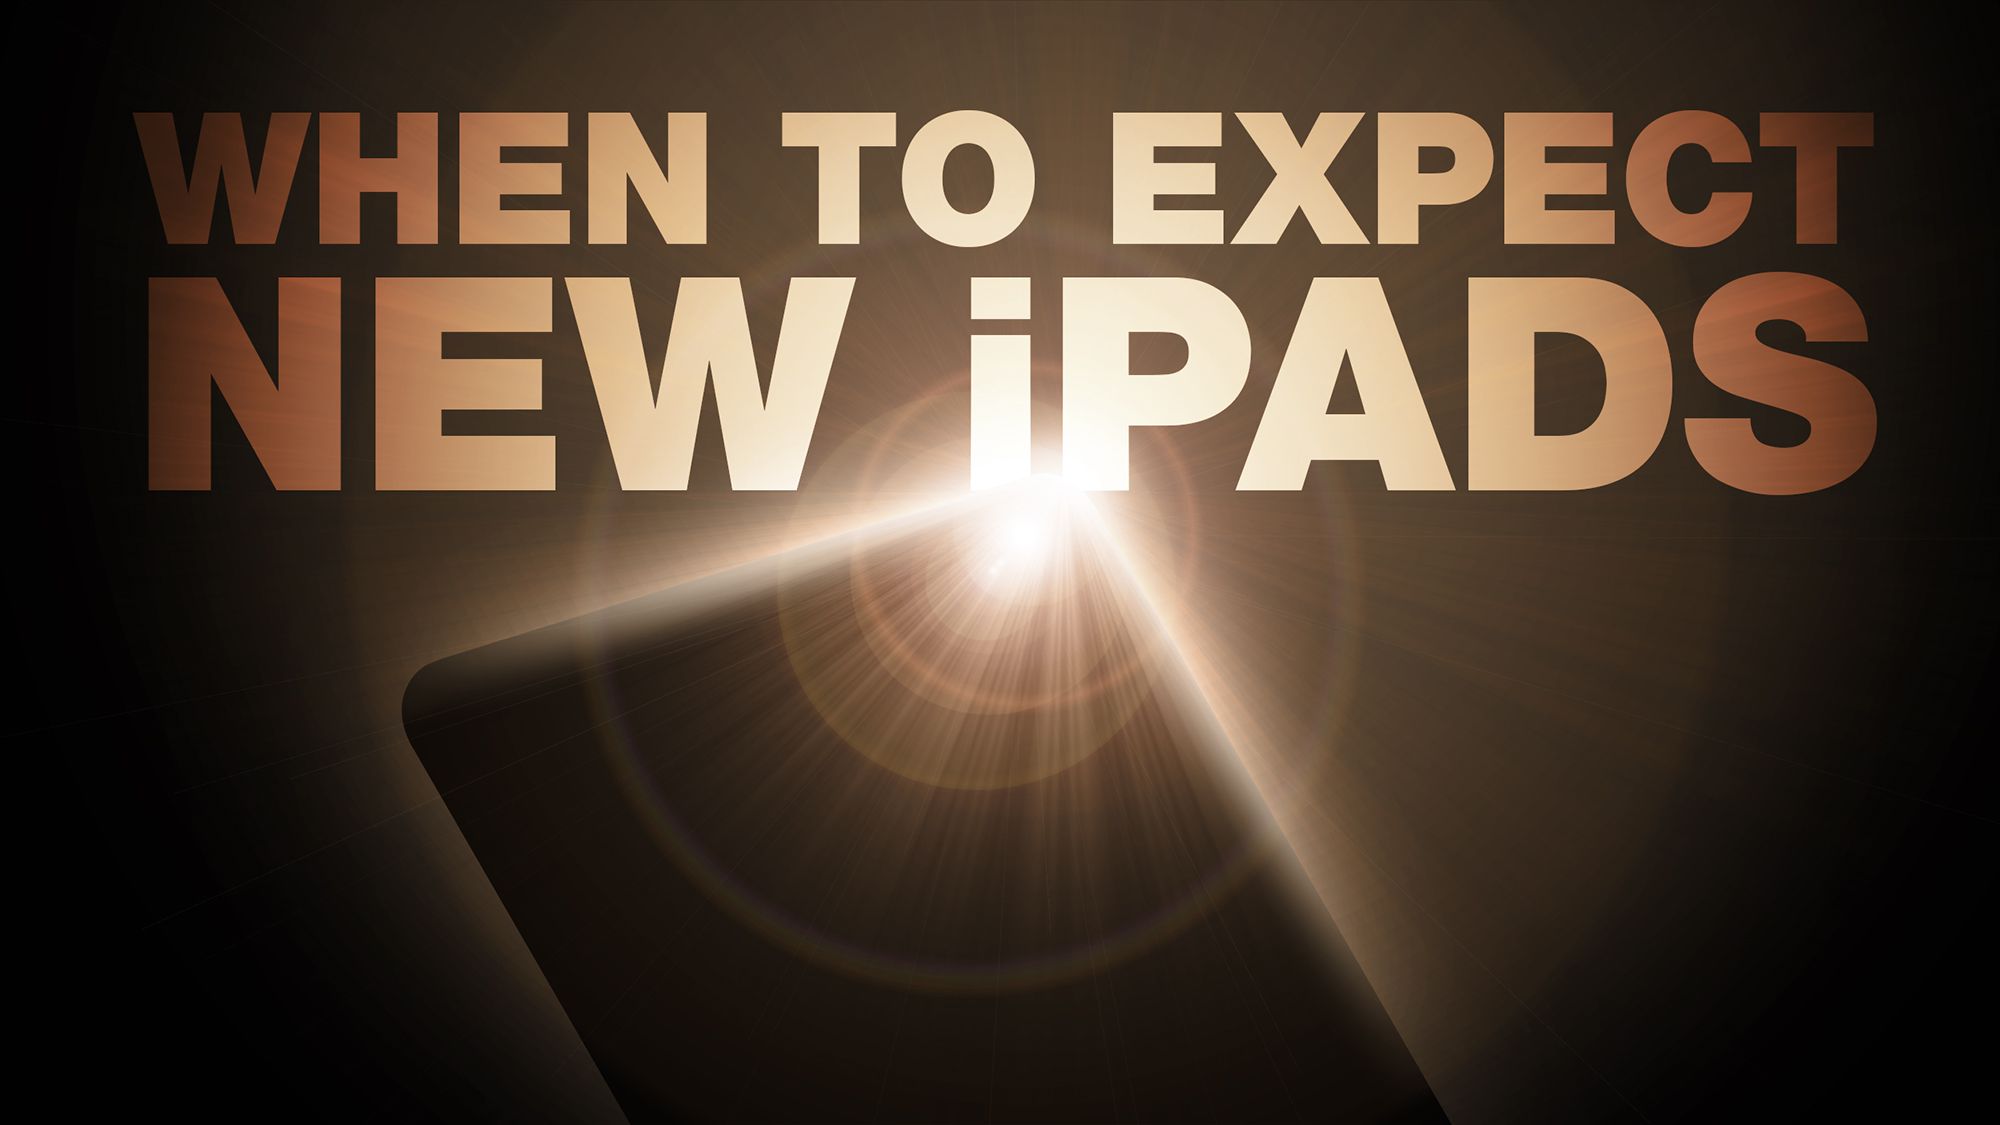 Gorman: No habrá anuncio de iPad el 26 de marzo